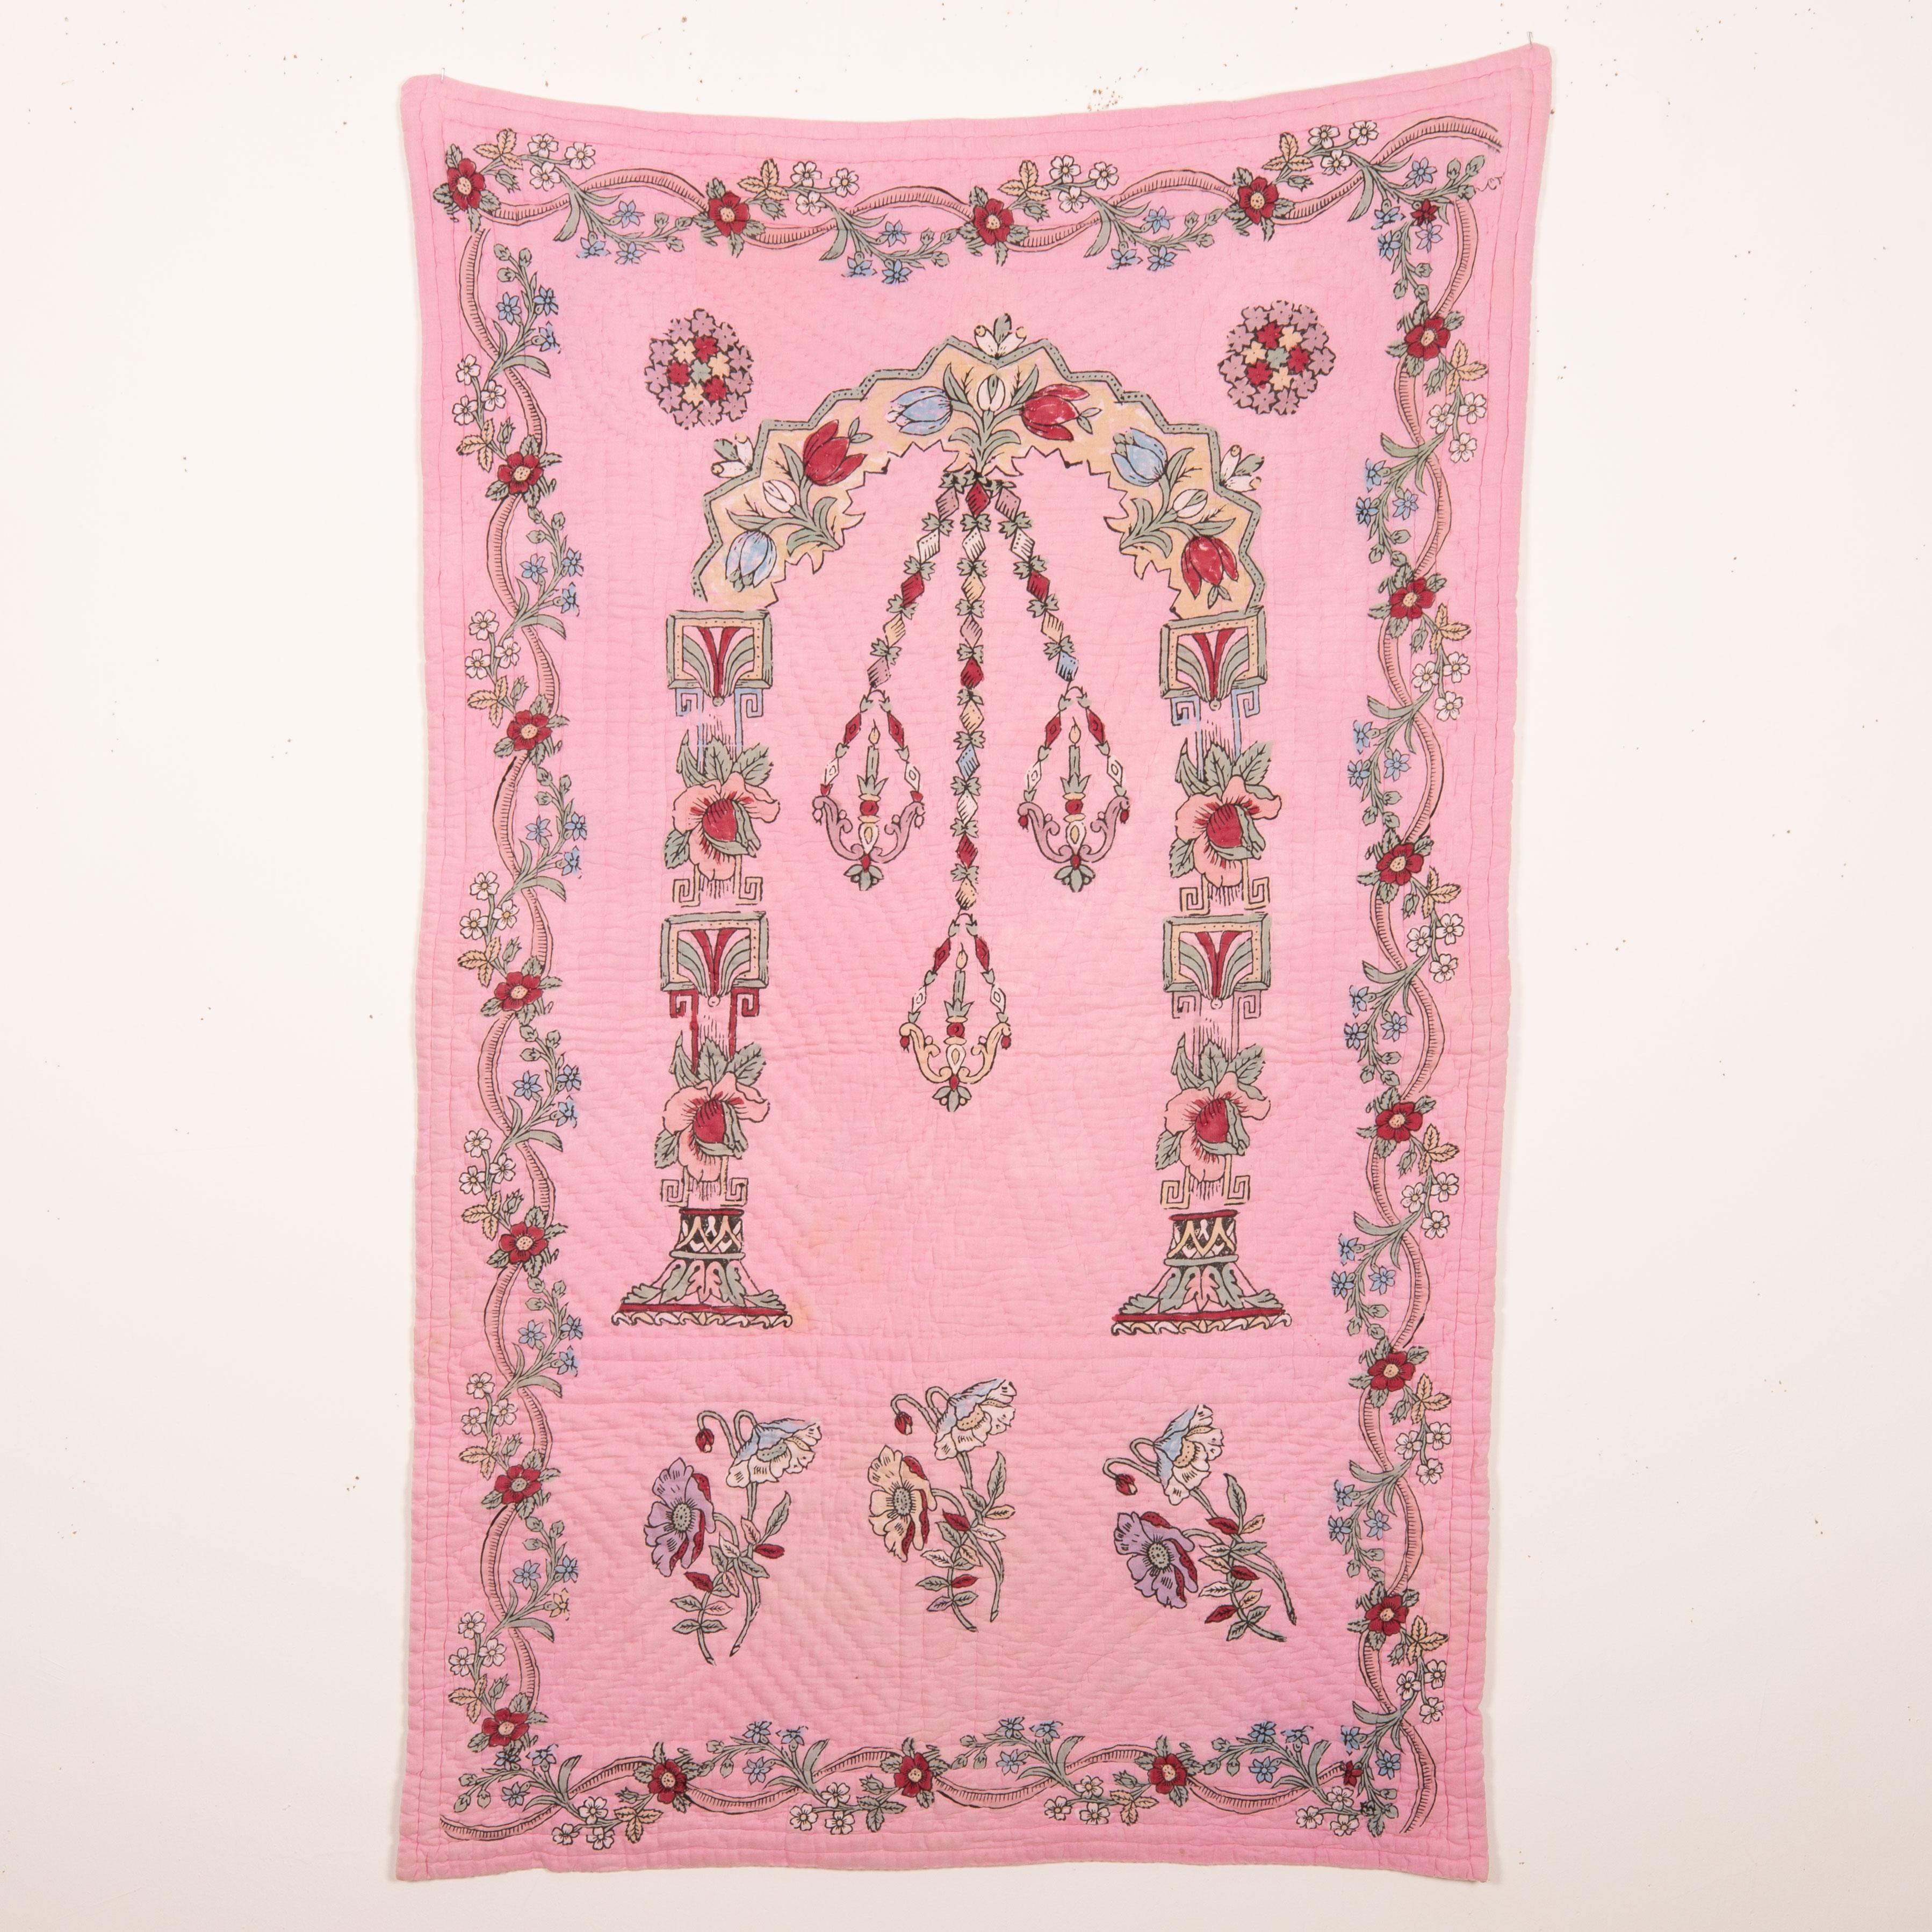 Der Handblockdruck ist eines der Wahrzeichen der materiellen Kultur Westanatoliens. Diese Quilts wurden entweder als Gebetsteppiche oder als Wandbehang verwendet.
